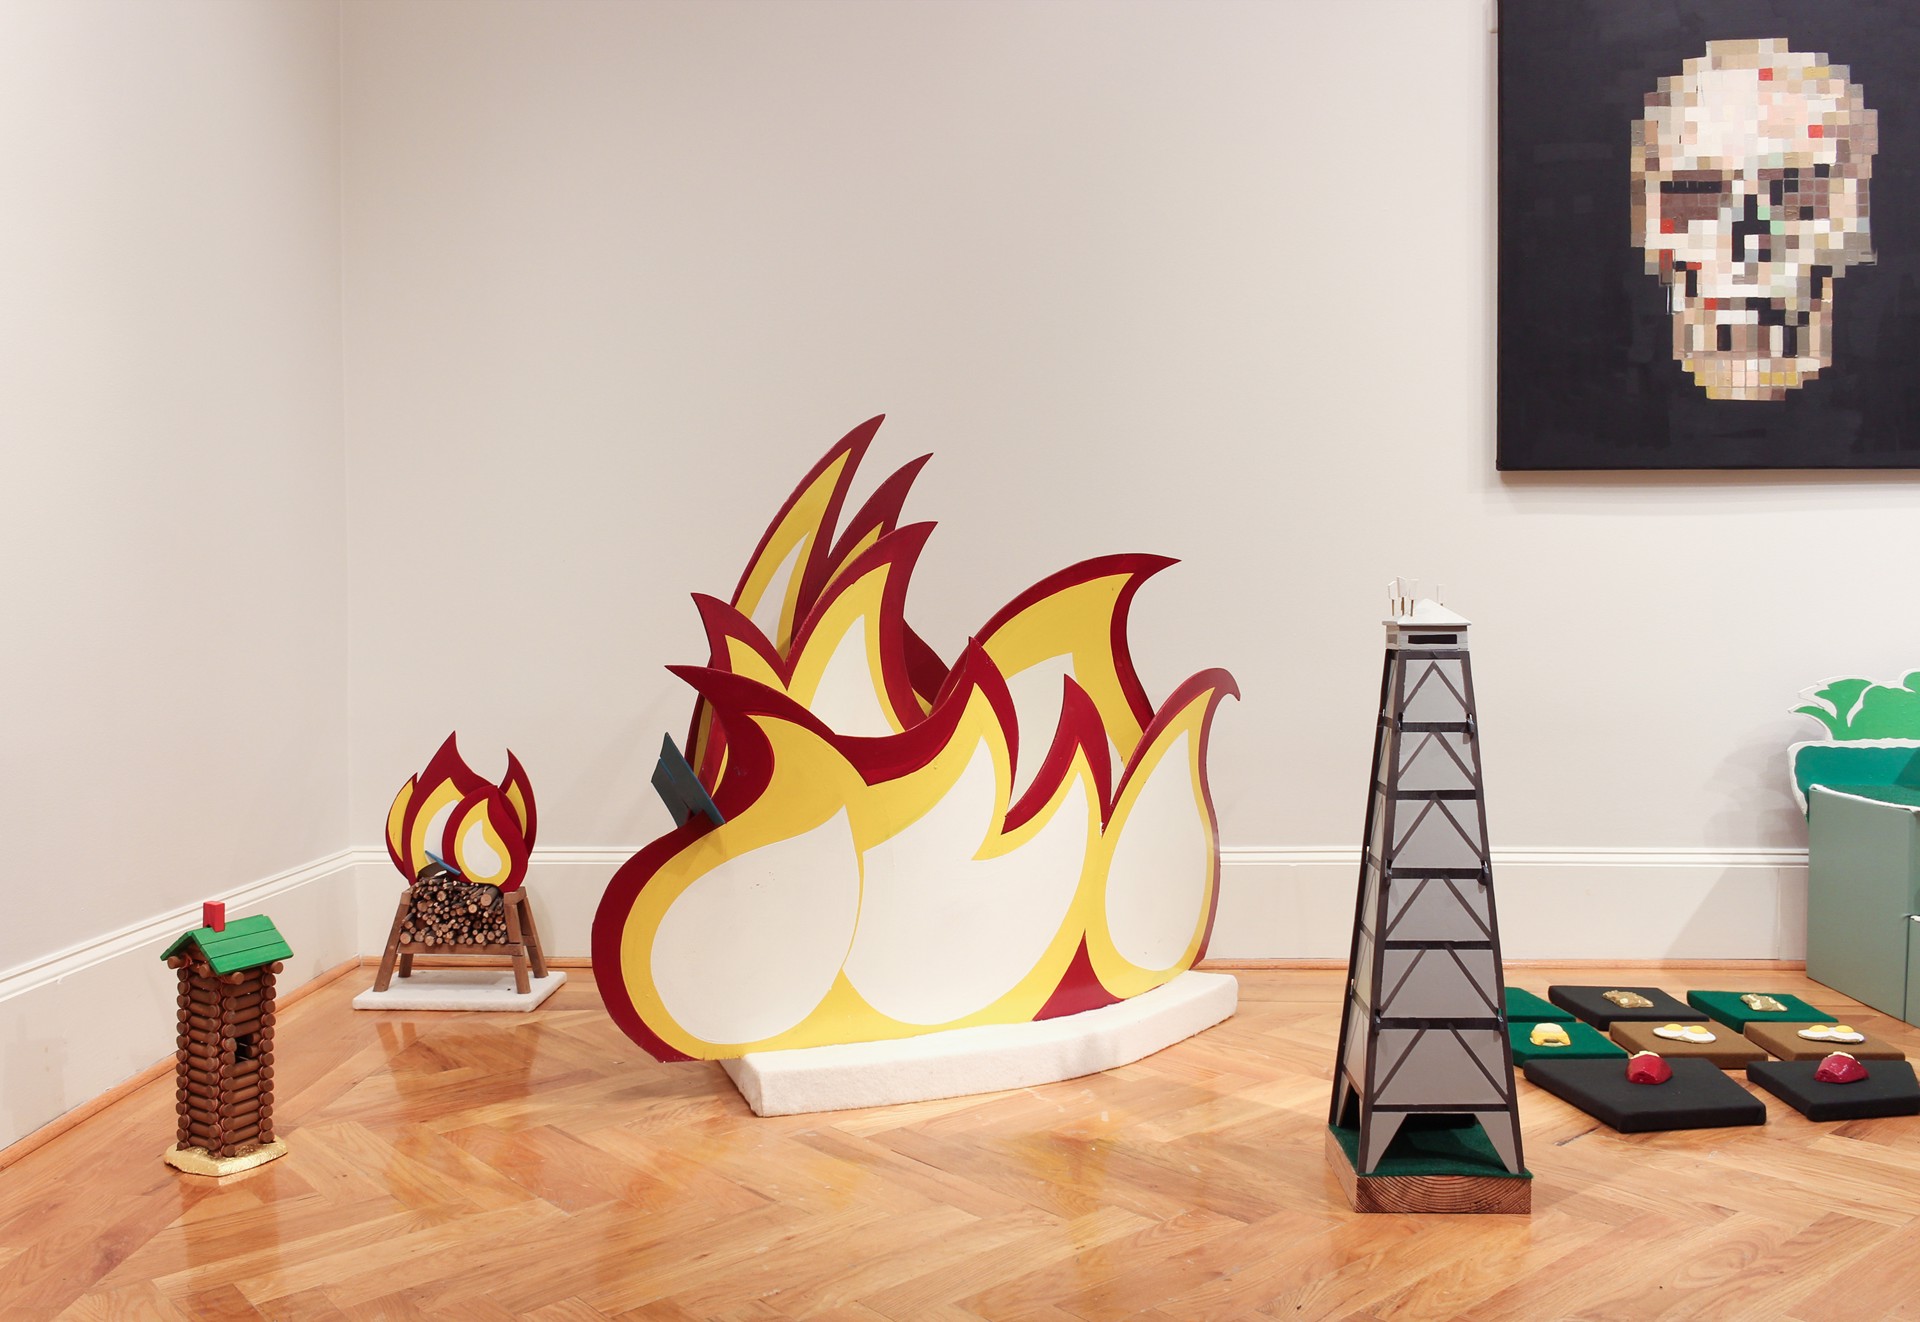 Wild Fire by Robert Hightower